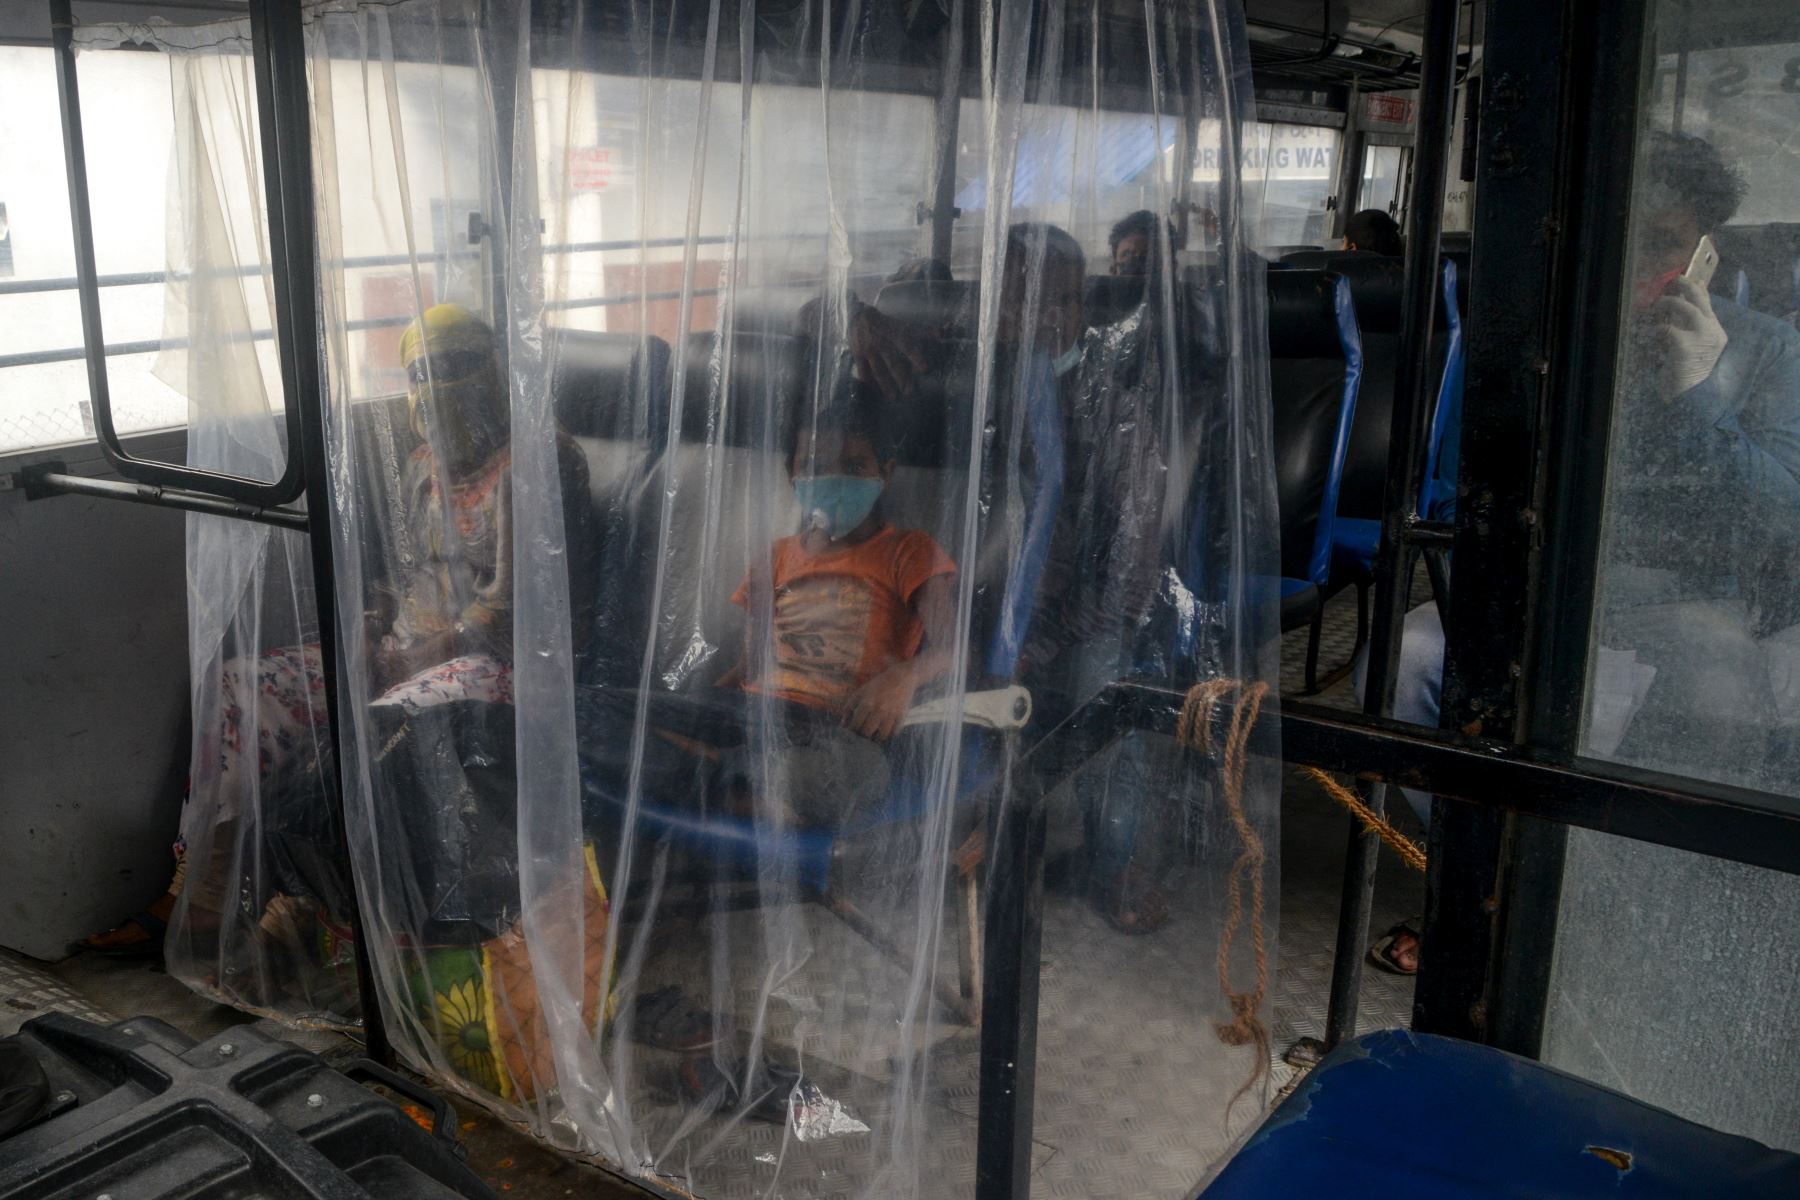 Los pasajeros viajan en un autobús estatal manteniendo el distanciamiento social después de que los servicios de autobuses se reanuden después de que el gobierno alivió un bloqueo nacional impuesto como medida preventiva contra el coronavirus COVID-19, en Siliguri, India. Foto: AFP